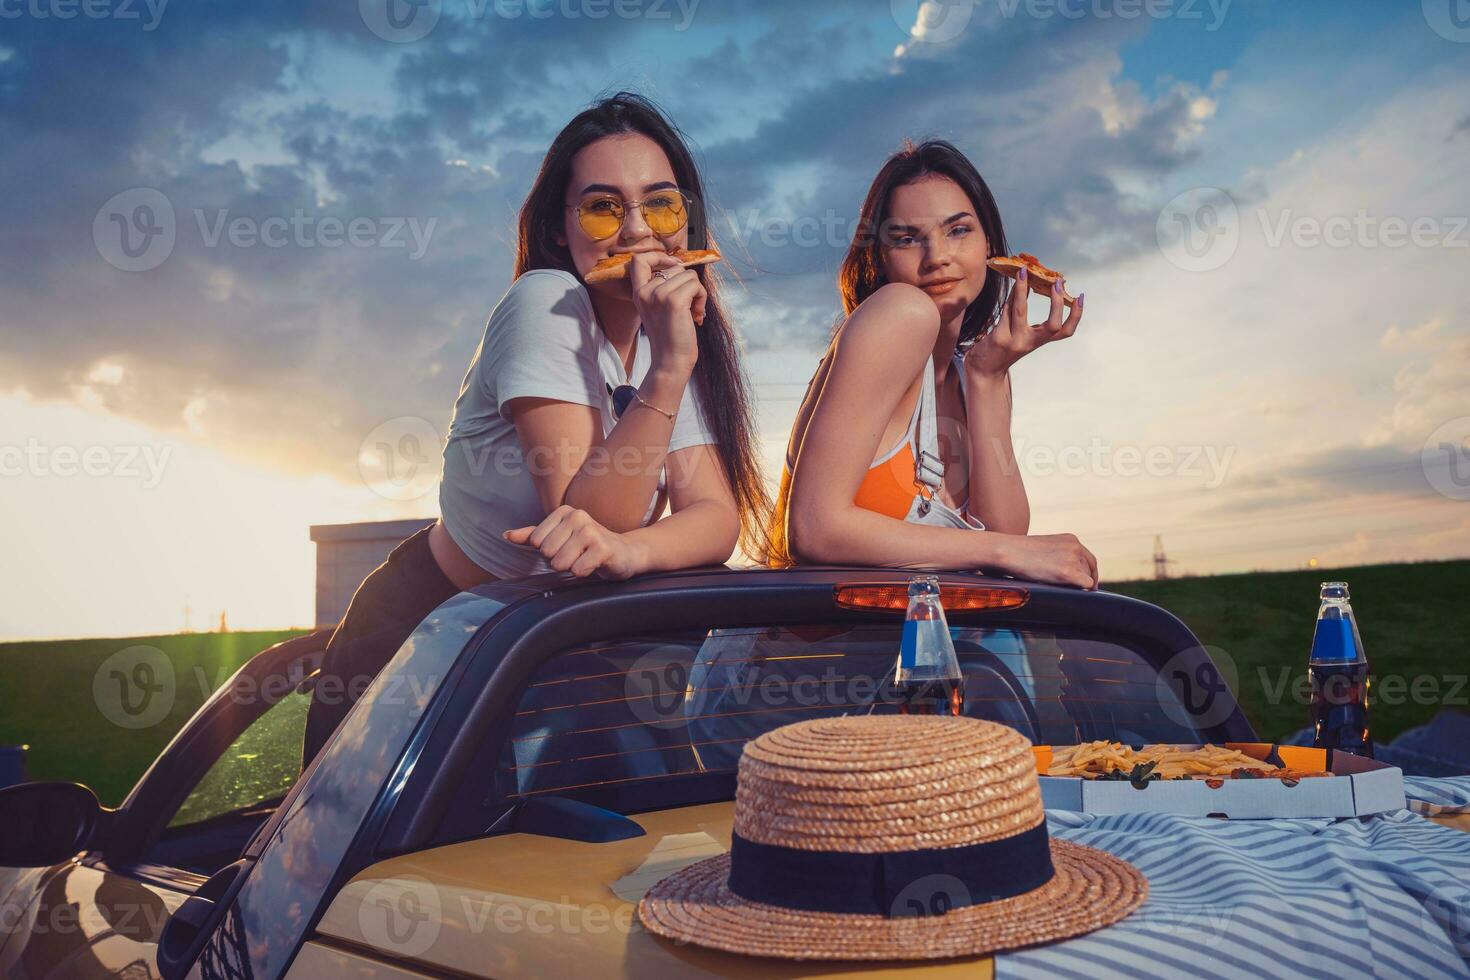 encantador muchachas comiendo pizza, posando en amarillo coche coche de turismo con francés papas fritas, sombrero y soda en vaso botellas en trompa. rápido alimento. burlarse de arriba foto